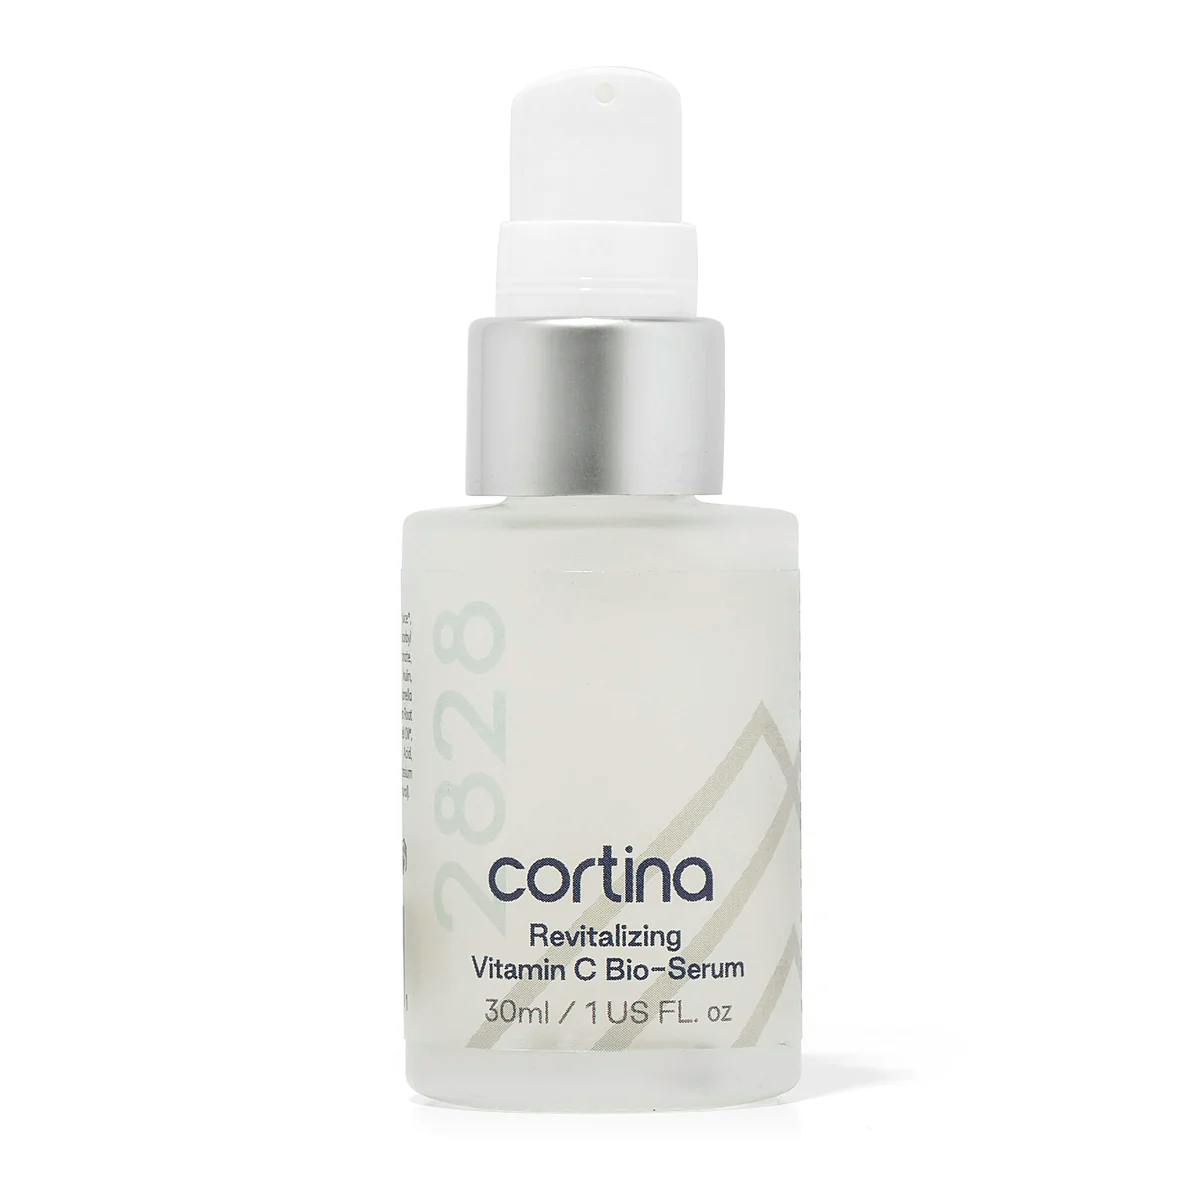 Cortina 2828 Revitalizing Vitamin C Bio-Serum Image 1